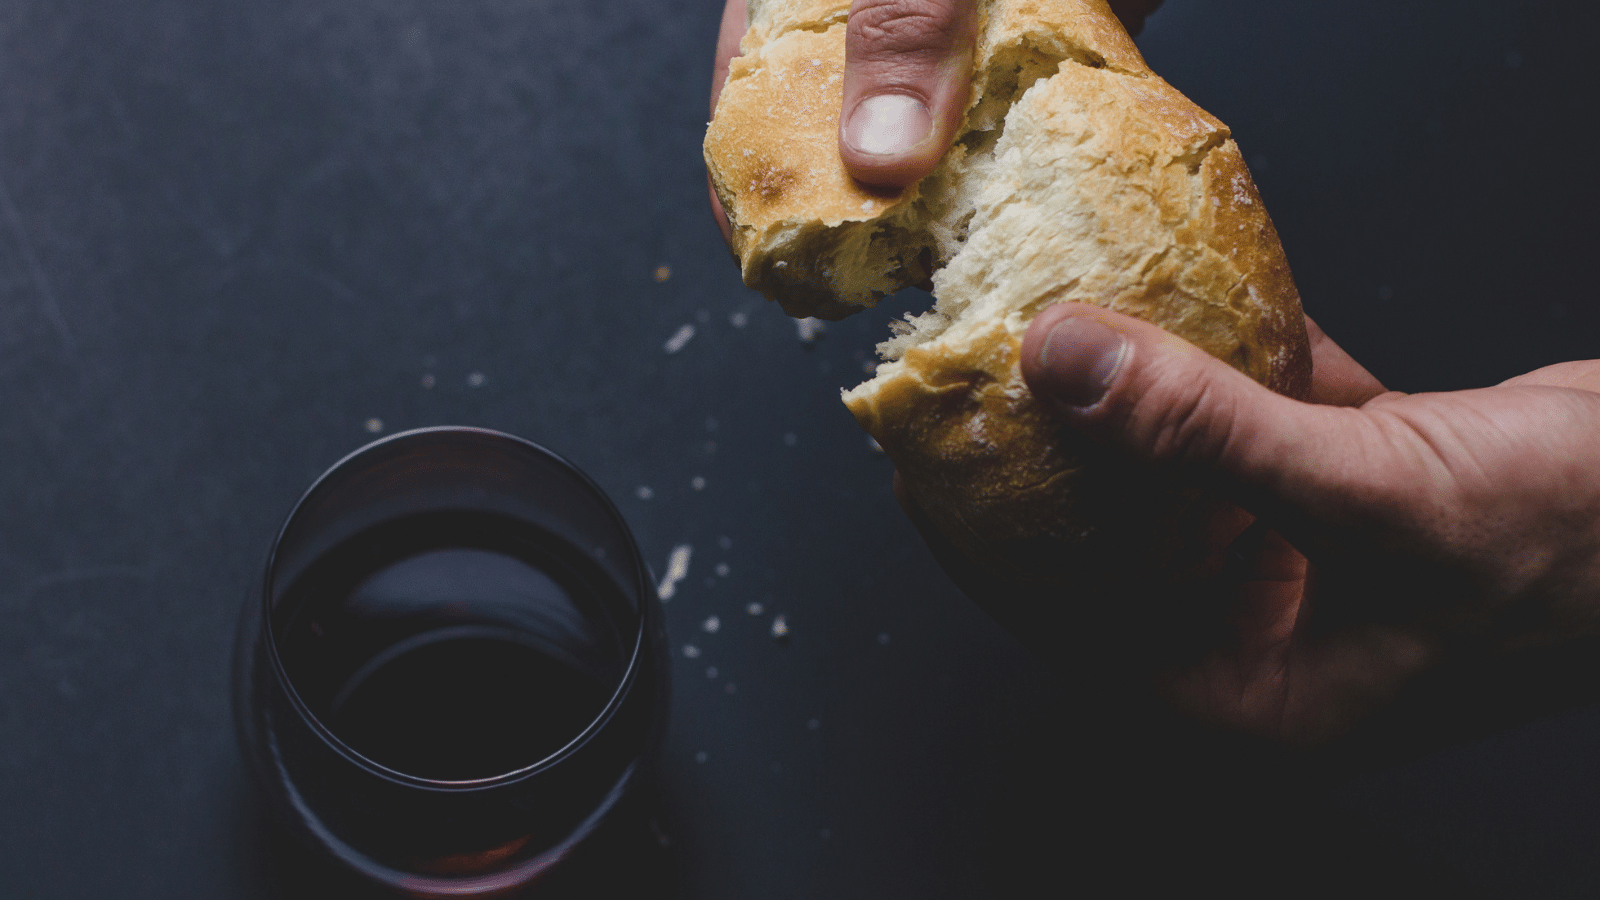 communion bread and wine